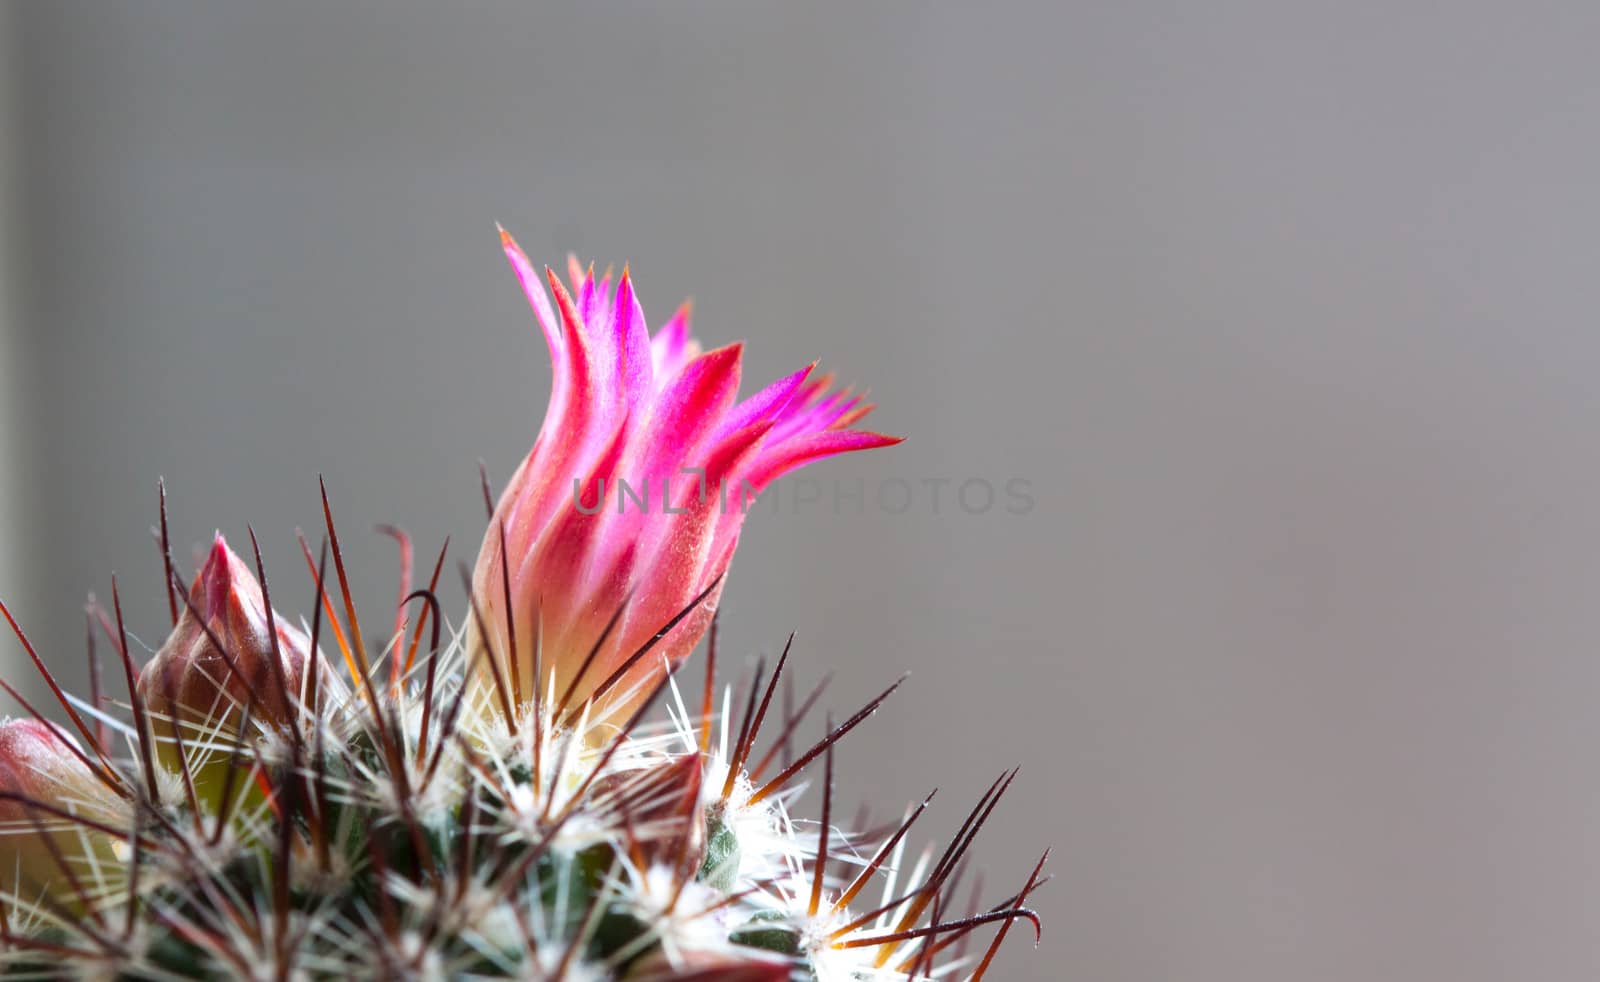 cactus flower by arhip4